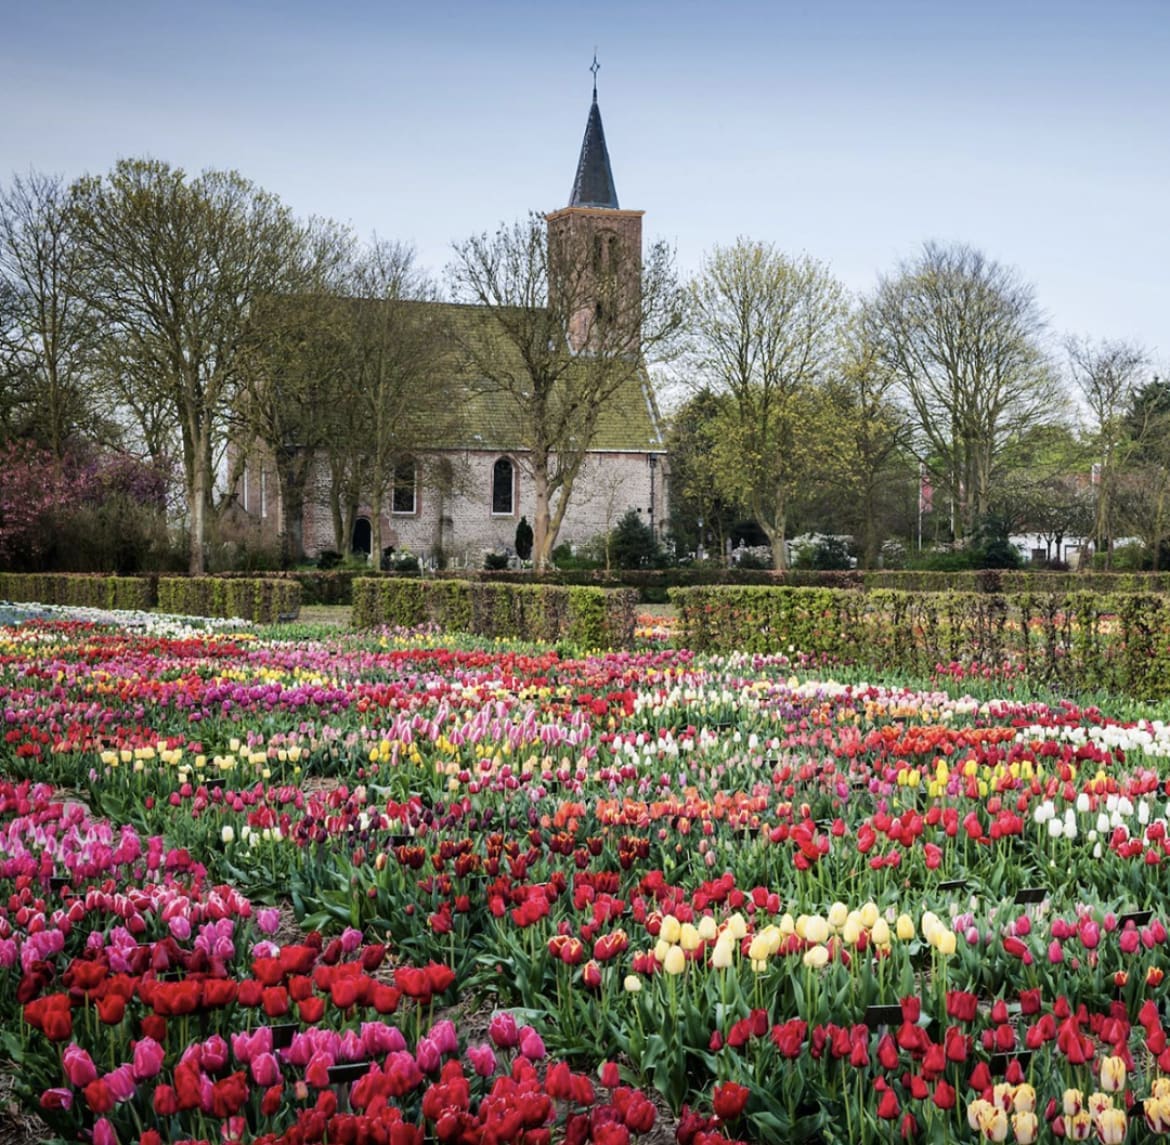 Hortus Bulborum, Limmen - Tulip Gardens Near Amsterdam